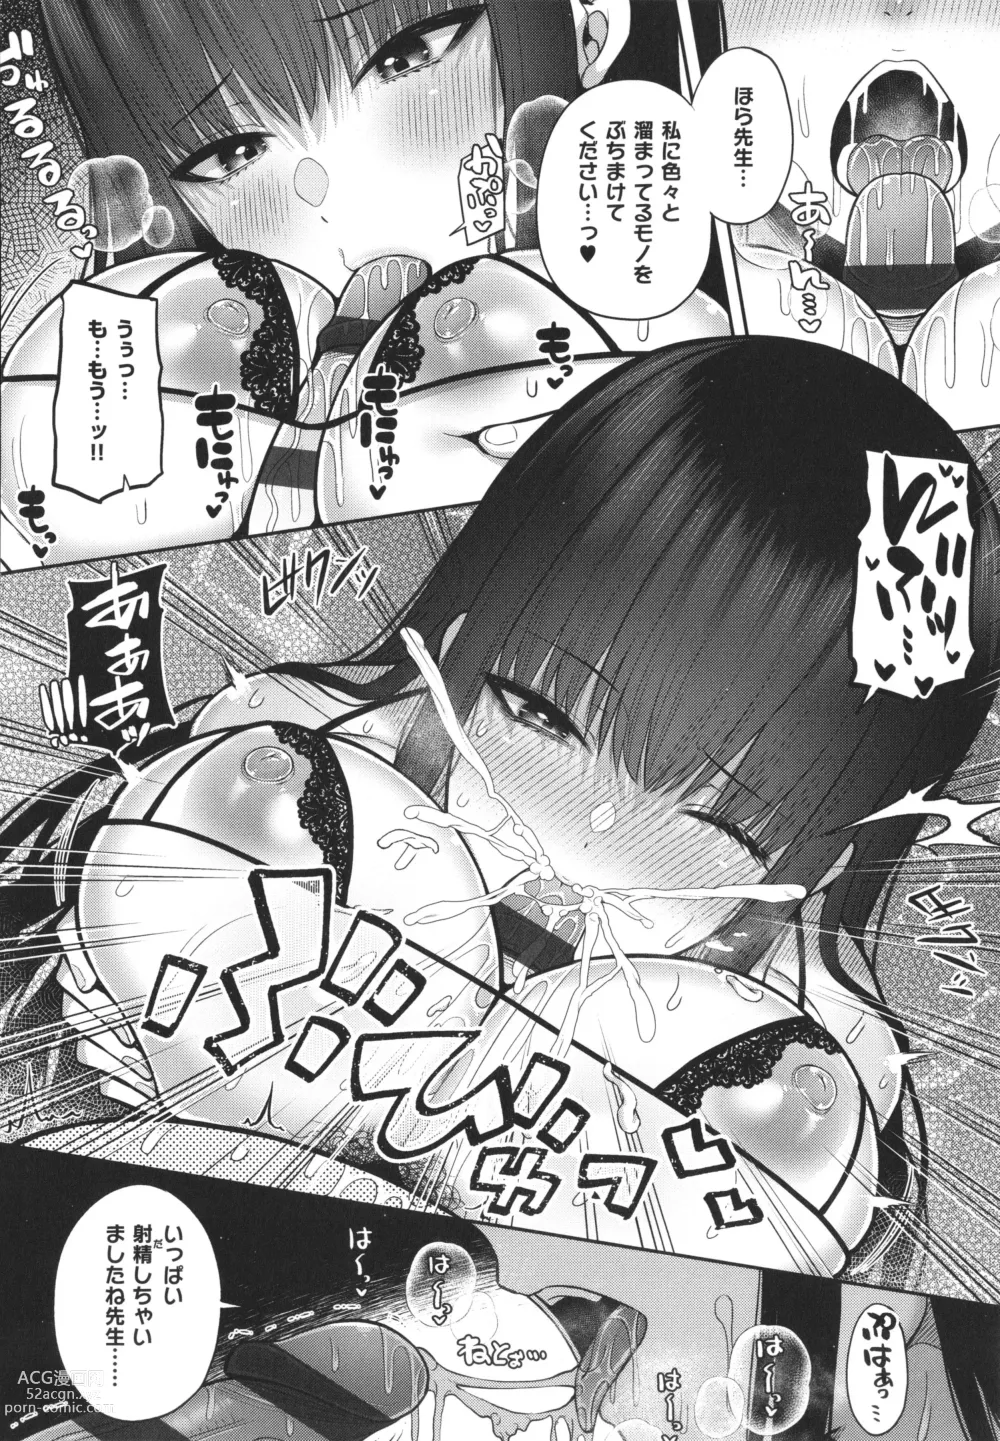 Page 249 of manga Enkou Shoujo wa Suki Desuka?